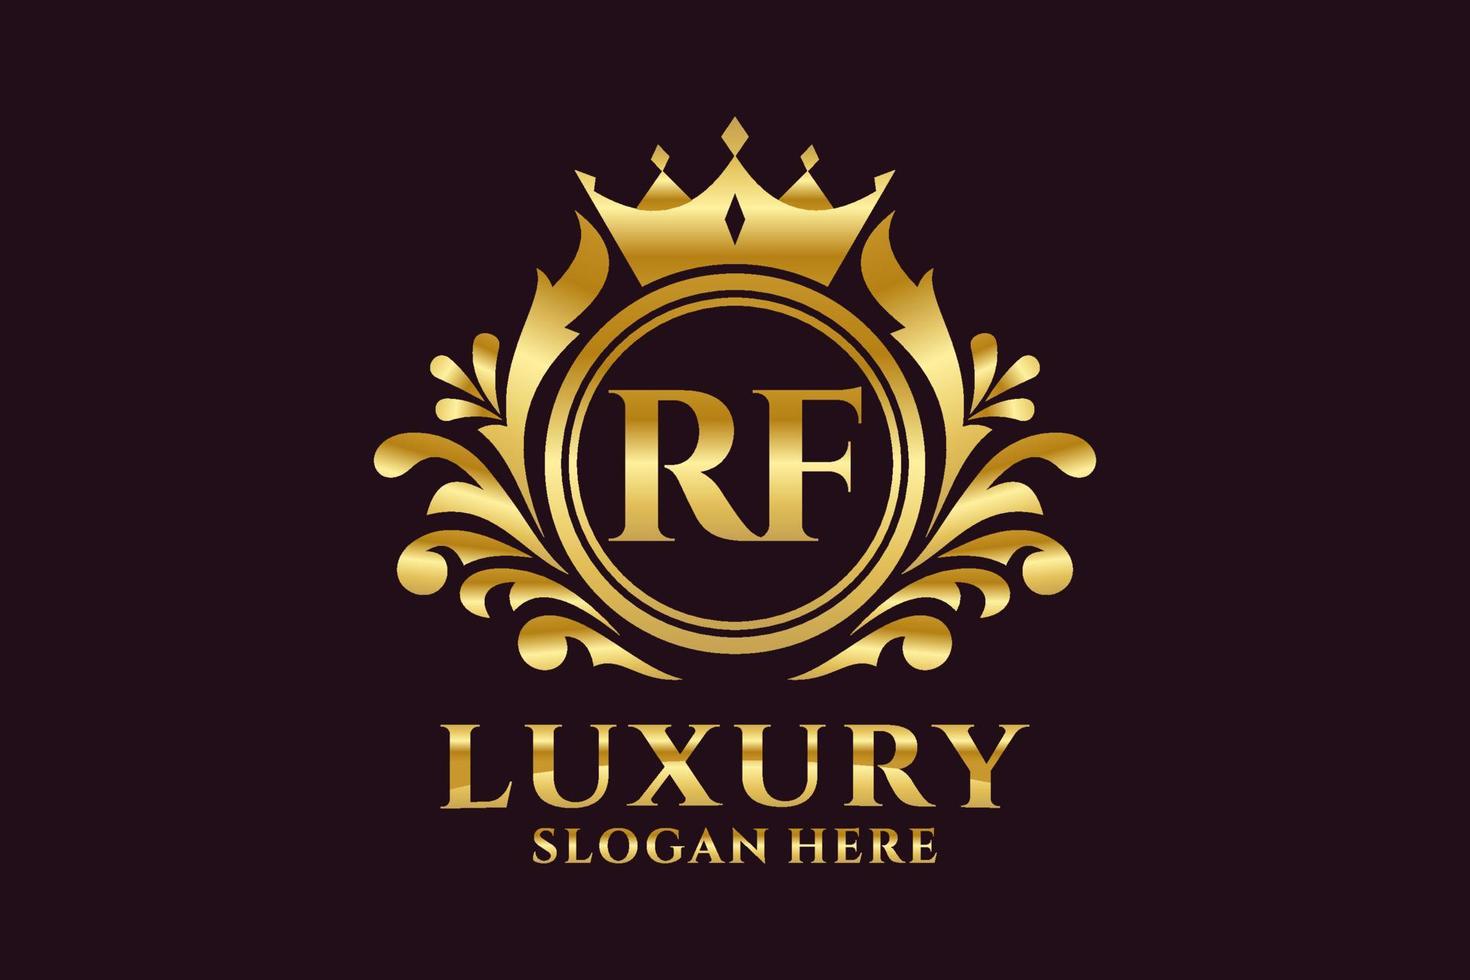 modelo de logotipo de luxo real carta inicial rf em arte vetorial para projetos de marca de luxo e outras ilustrações vetoriais. vetor